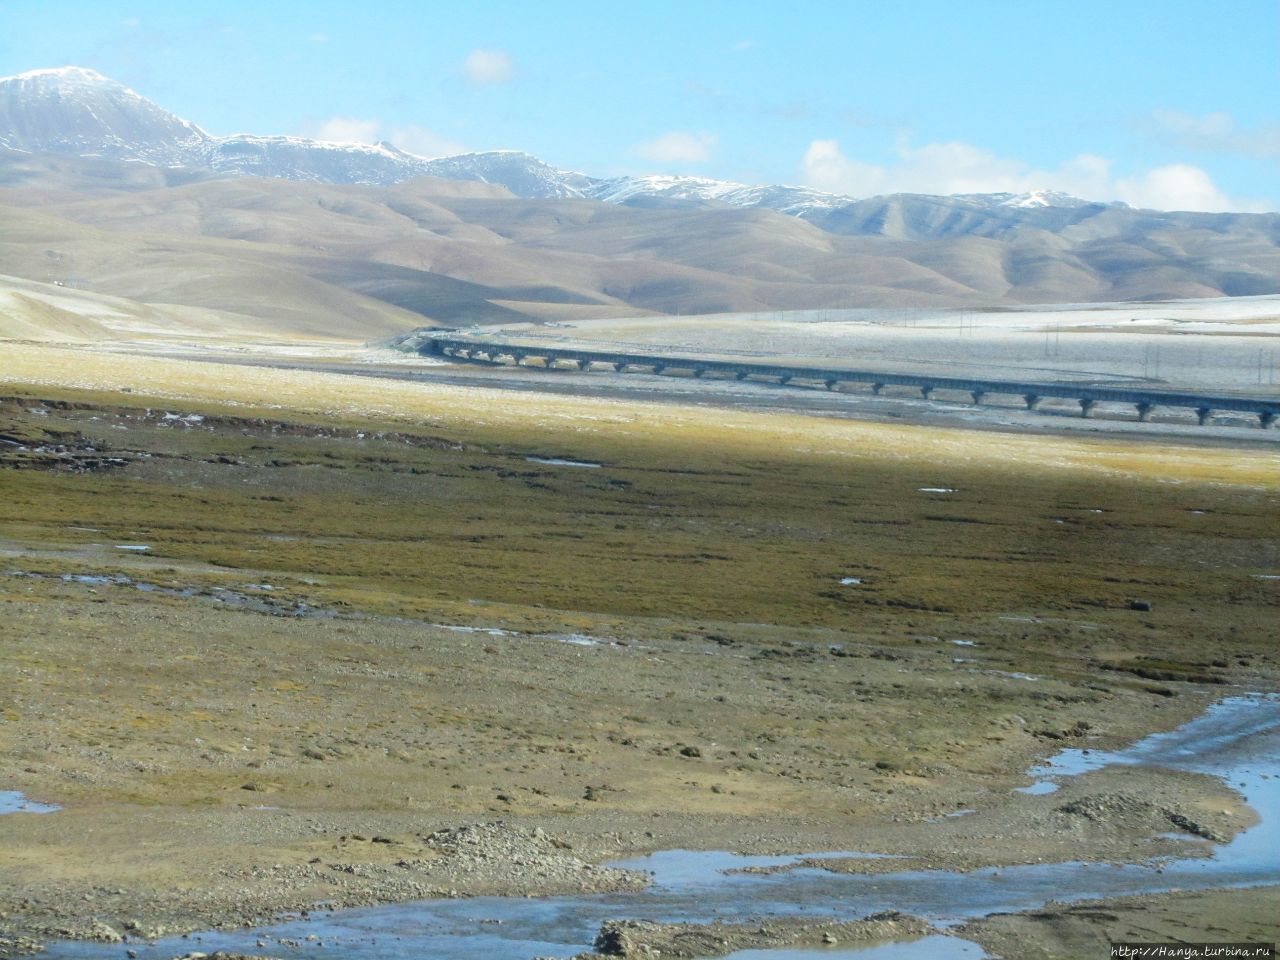 Виды за окном по дороге в Лхасу Тибет, Китай